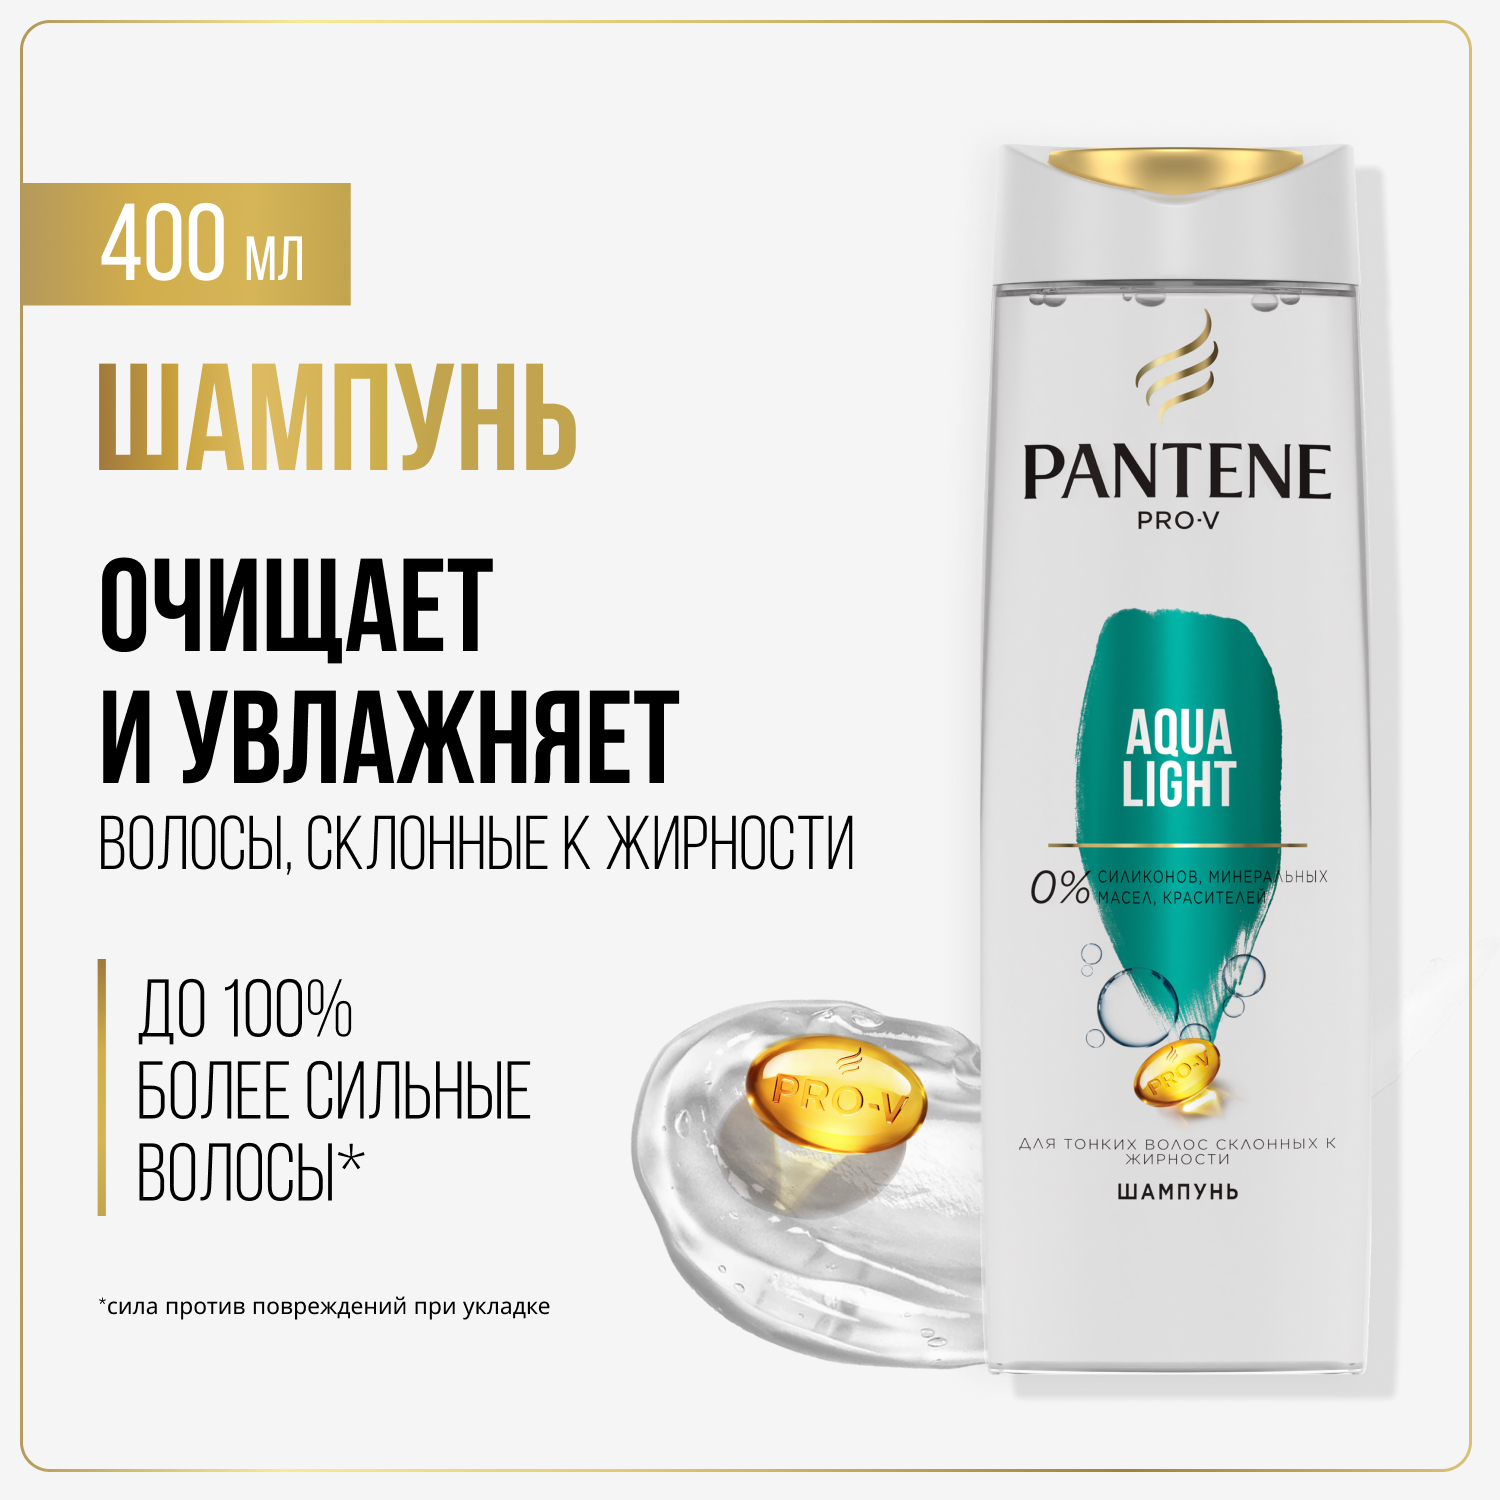 Шампунь Pantene Aqua Light 400 мл - купить в Мегамаркет Москва Пушкино, цена на Мегамаркет